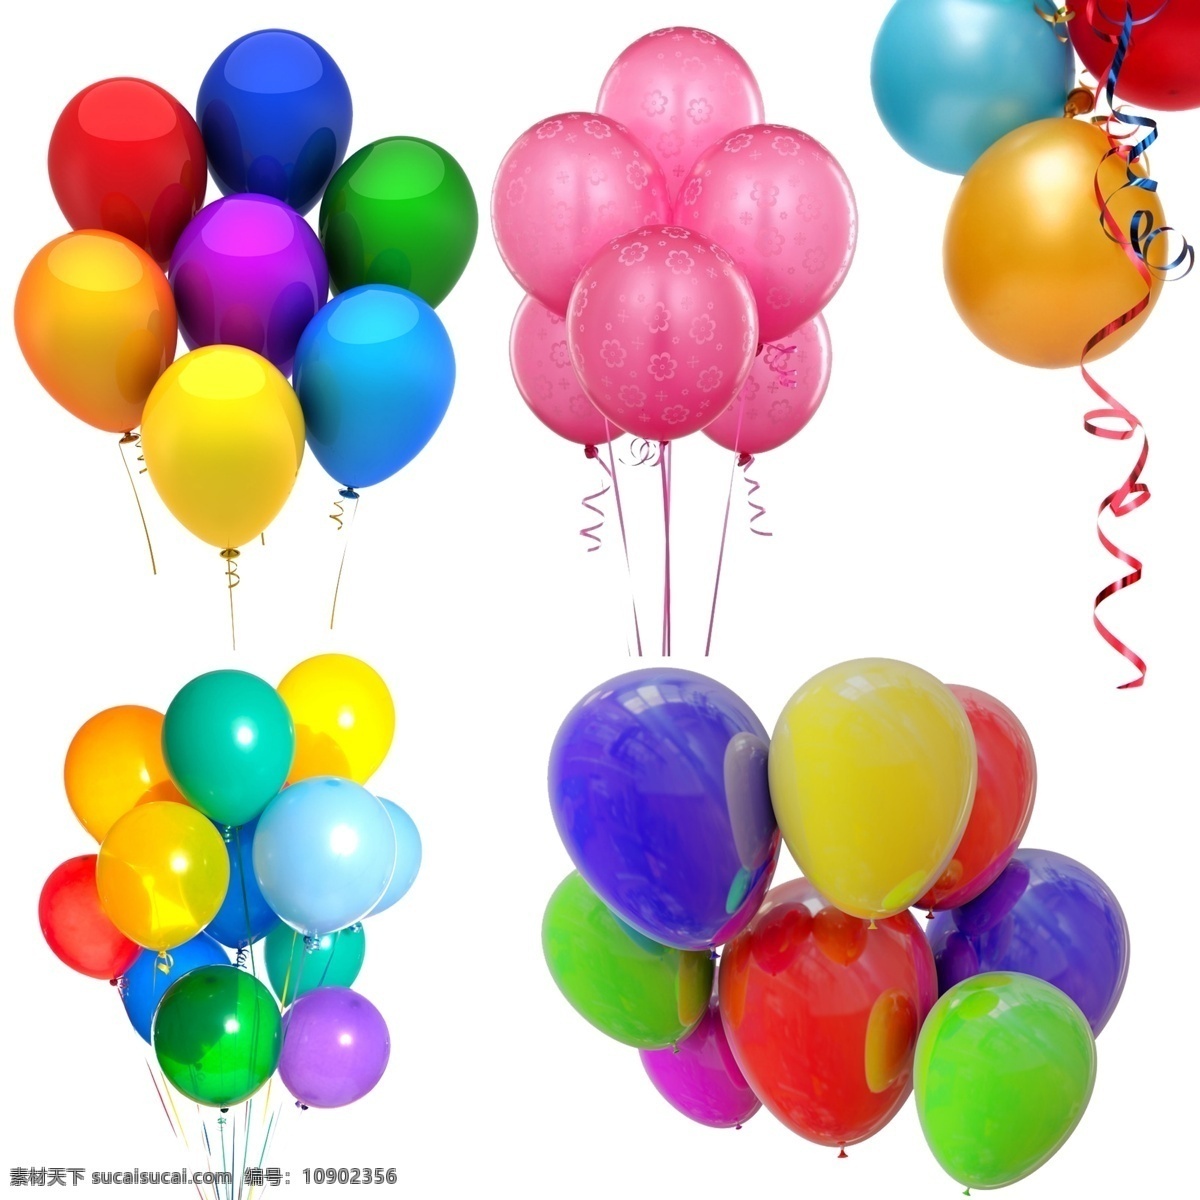 七彩 多彩 白色气球 氢气球素材 五彩 球 渐变气球 天空气球 紫色气球 绿色气球球 蓝色气球 彩色气球 扁平气球 气球海报 气球背景 旅行 旅游 气球展架 展架 云朵展架